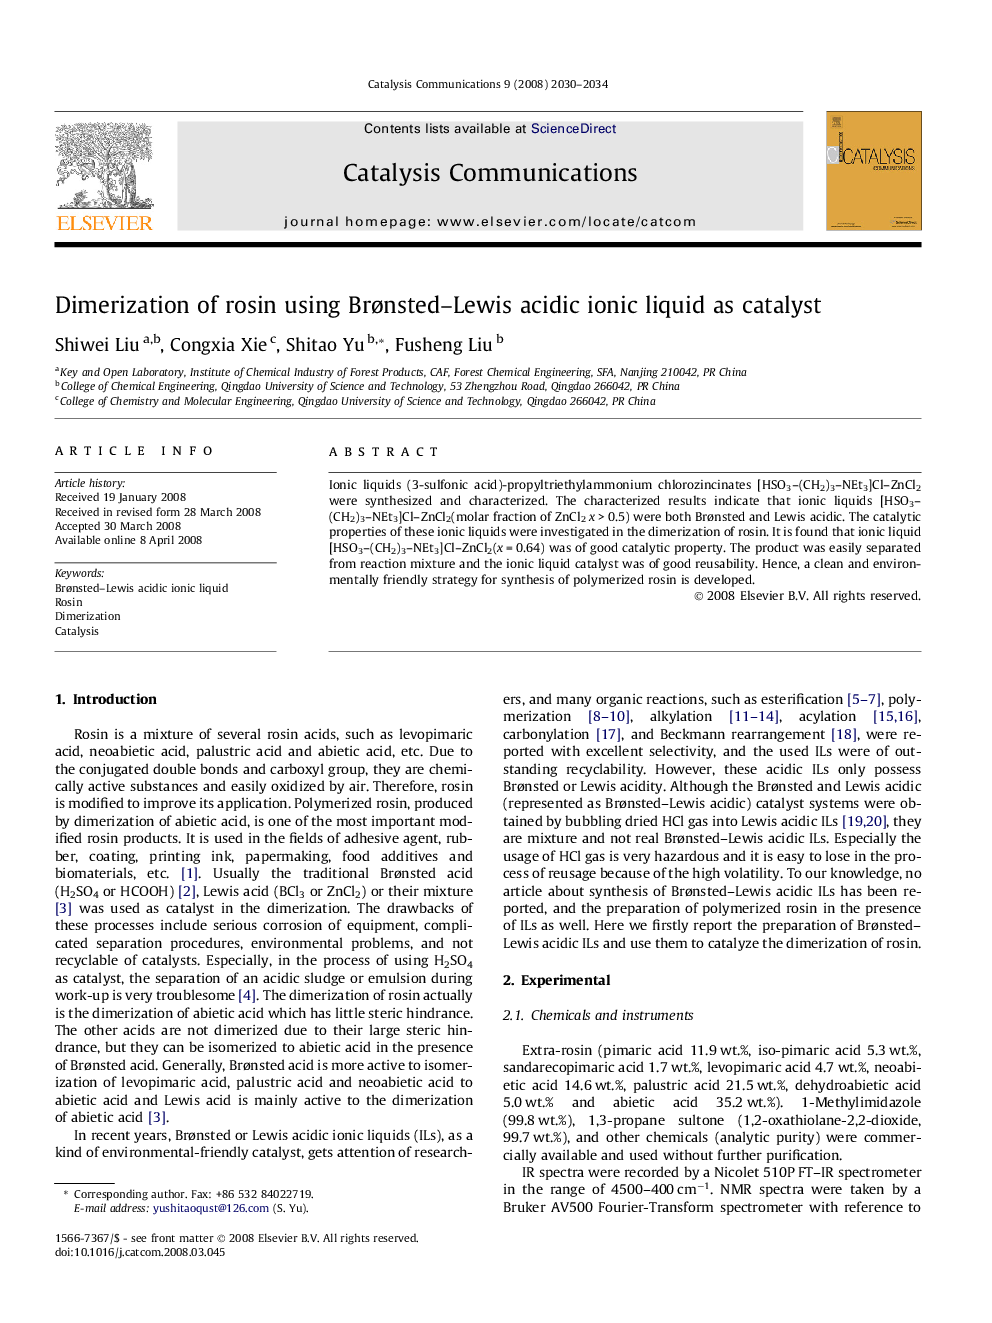 Dimerization of rosin using Brønsted–Lewis acidic ionic liquid as catalyst